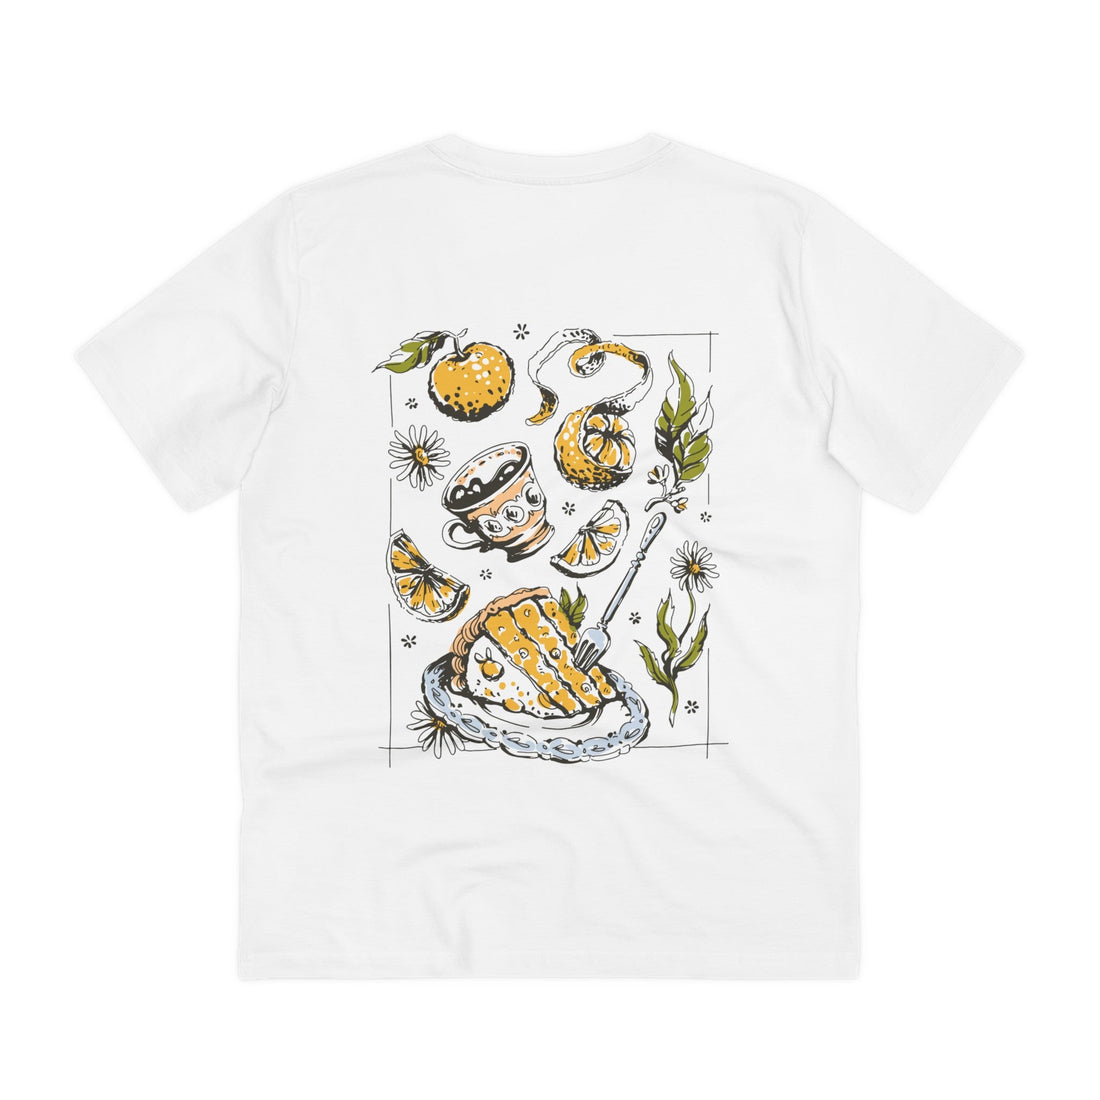 Printify T-Shirt White / 2XS Lemon Cake - Cottagecore Lifestyle - Back Design